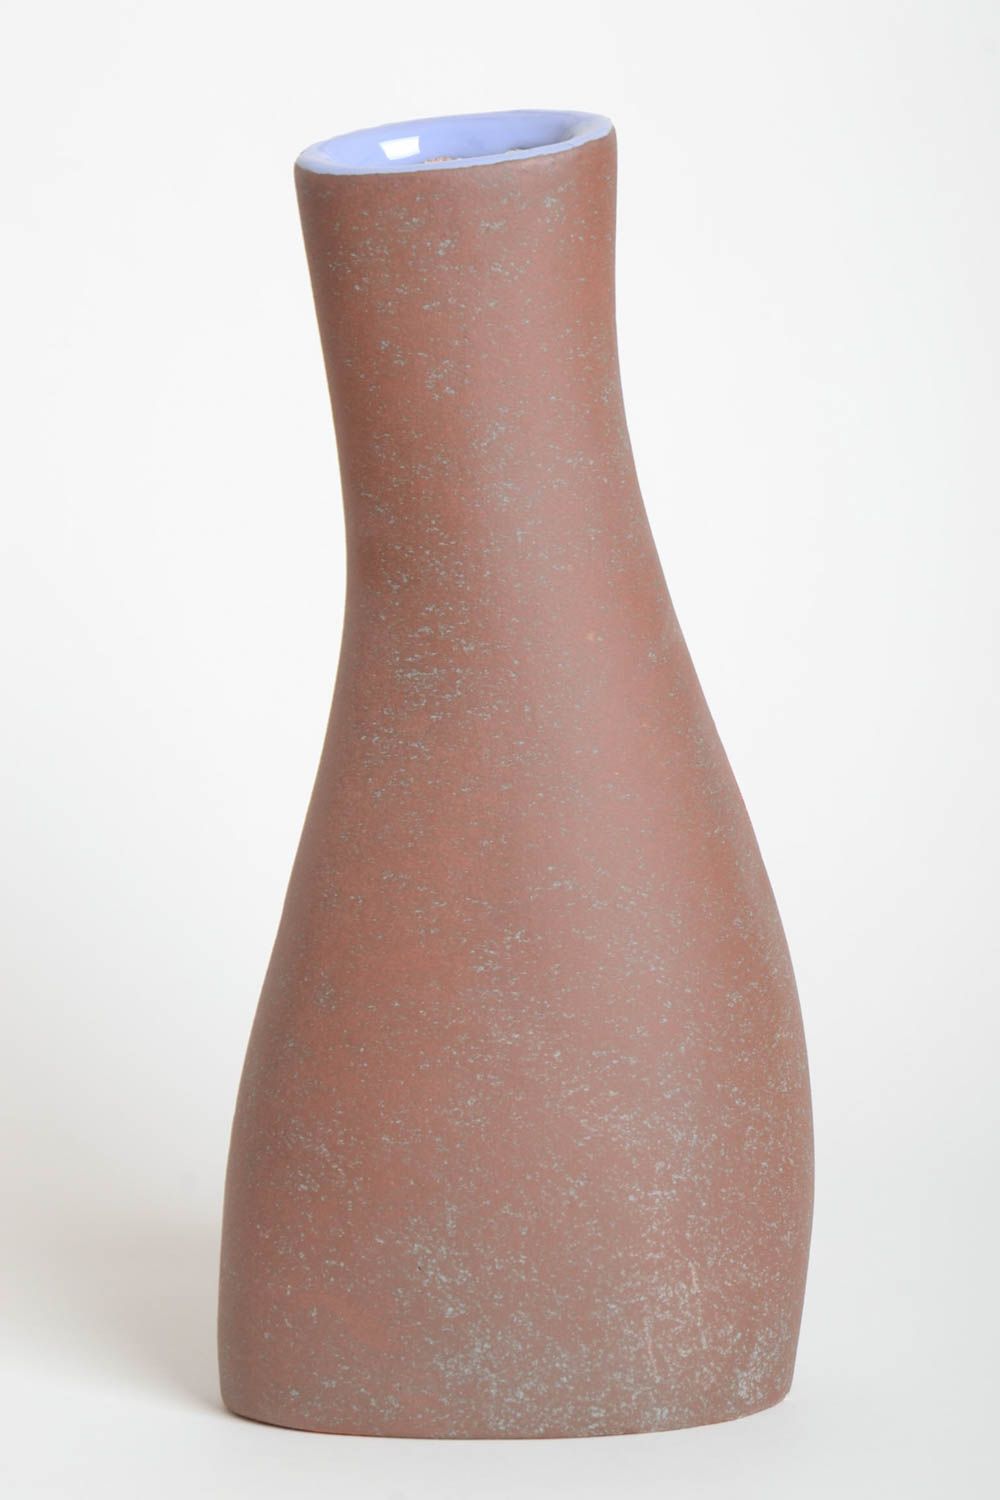 Keramik Vase handmade für Haus Deko ausgefallene Vase schön bunt 1.7 L Geschenk foto 4